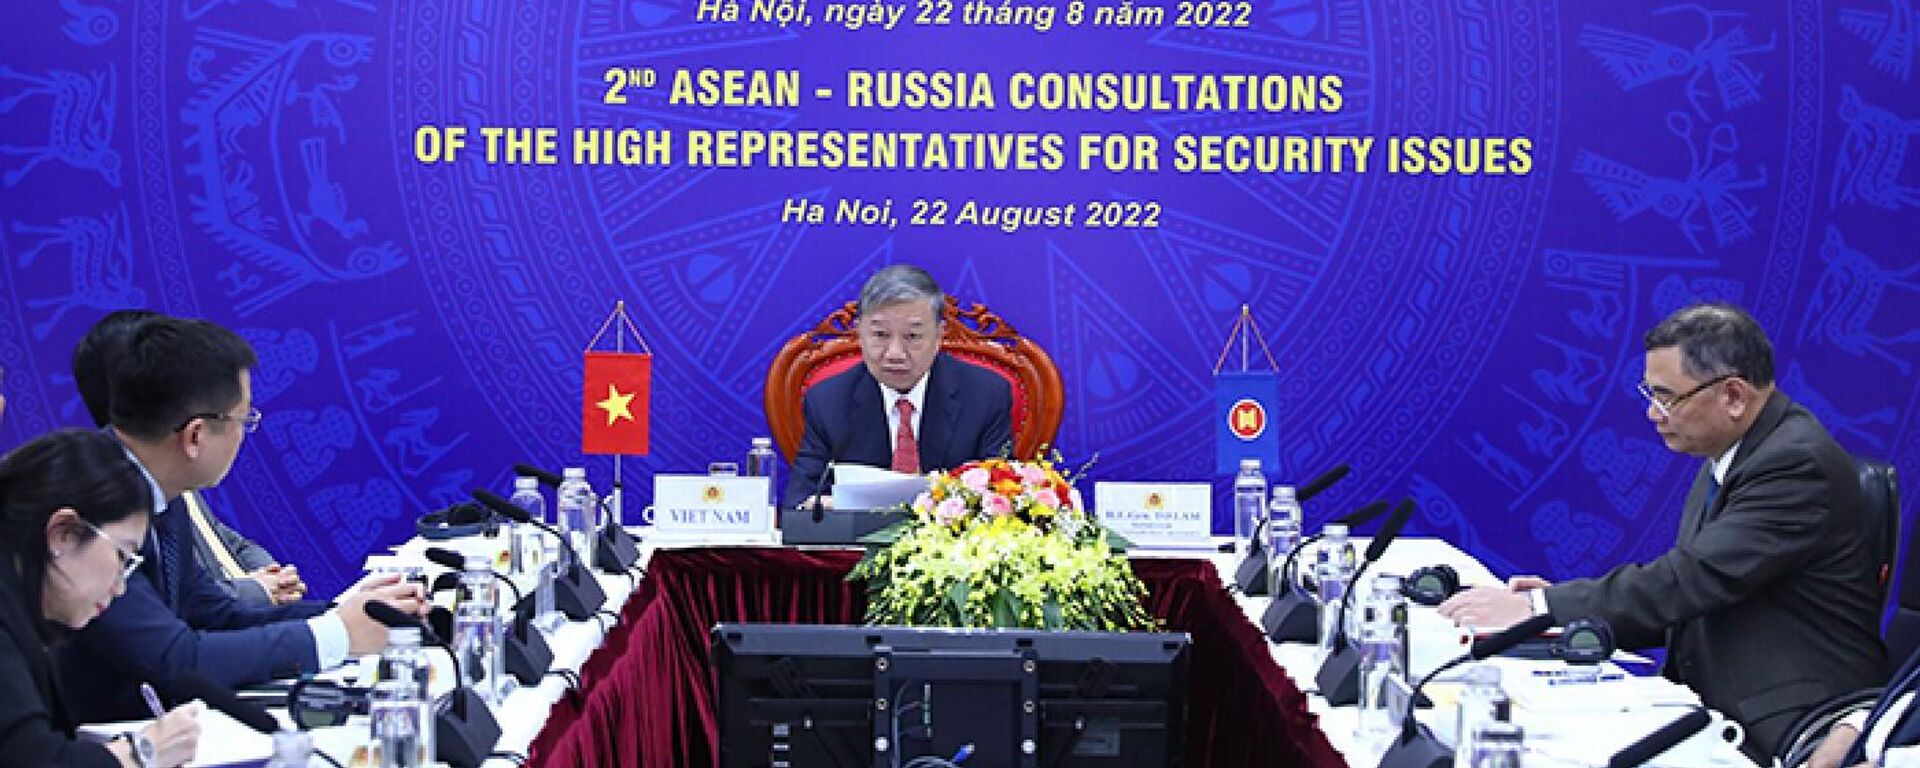 Thư ký Hội đồng An ninh Nga Nikolai Patrushev phát biểu tại Hội nghị tham vấn lãnh đạo cấp cao an ninh ASEAN – Nga - Sputnik Việt Nam, 1920, 22.08.2022